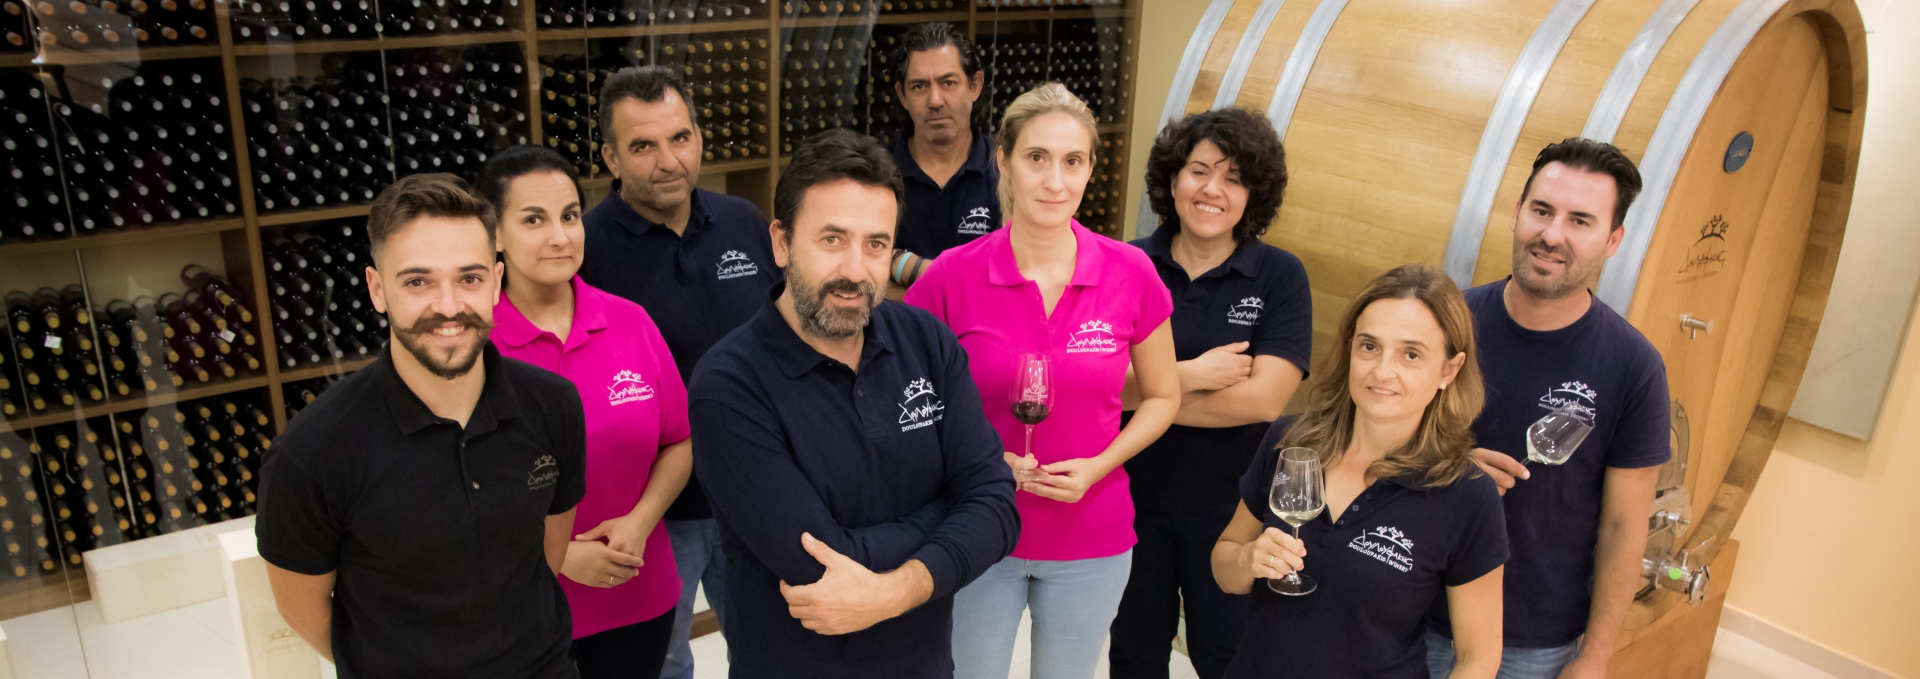 Team von Douloufakis Winery aus Dafnes, Kreta, Griechenland